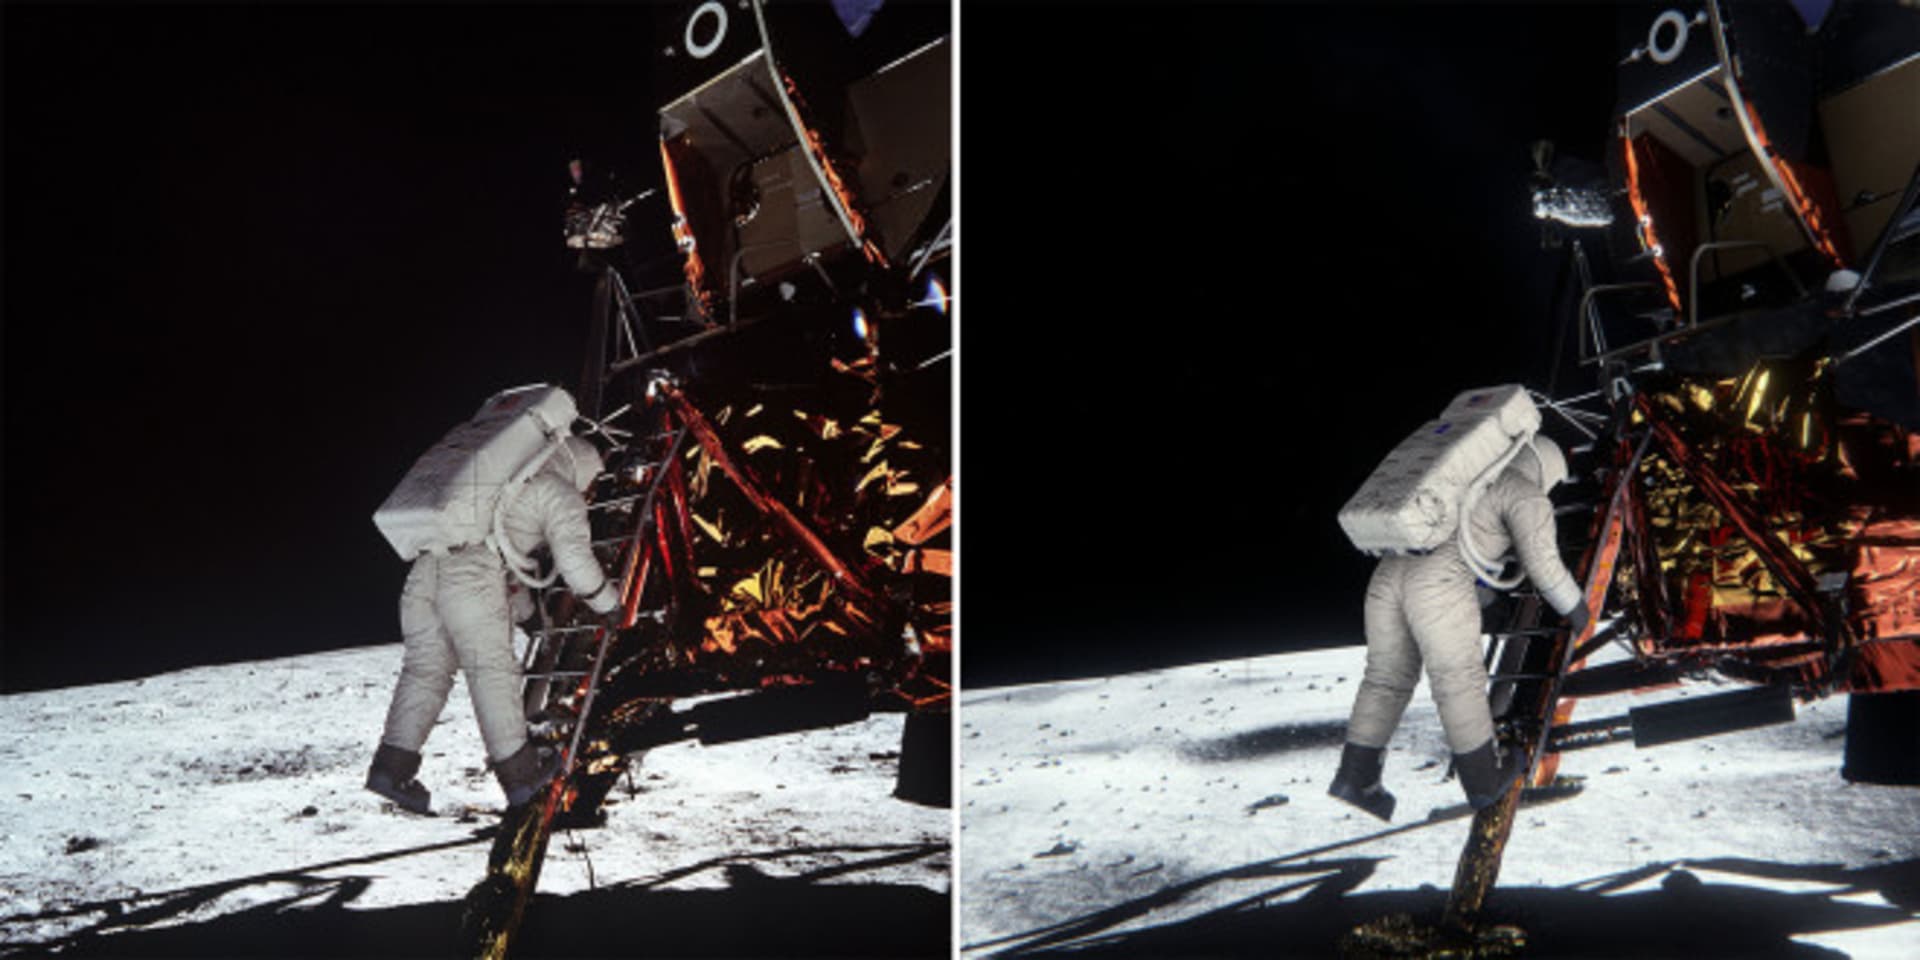 Přistání na Měsíci - vlevo originál, vpravo kopie